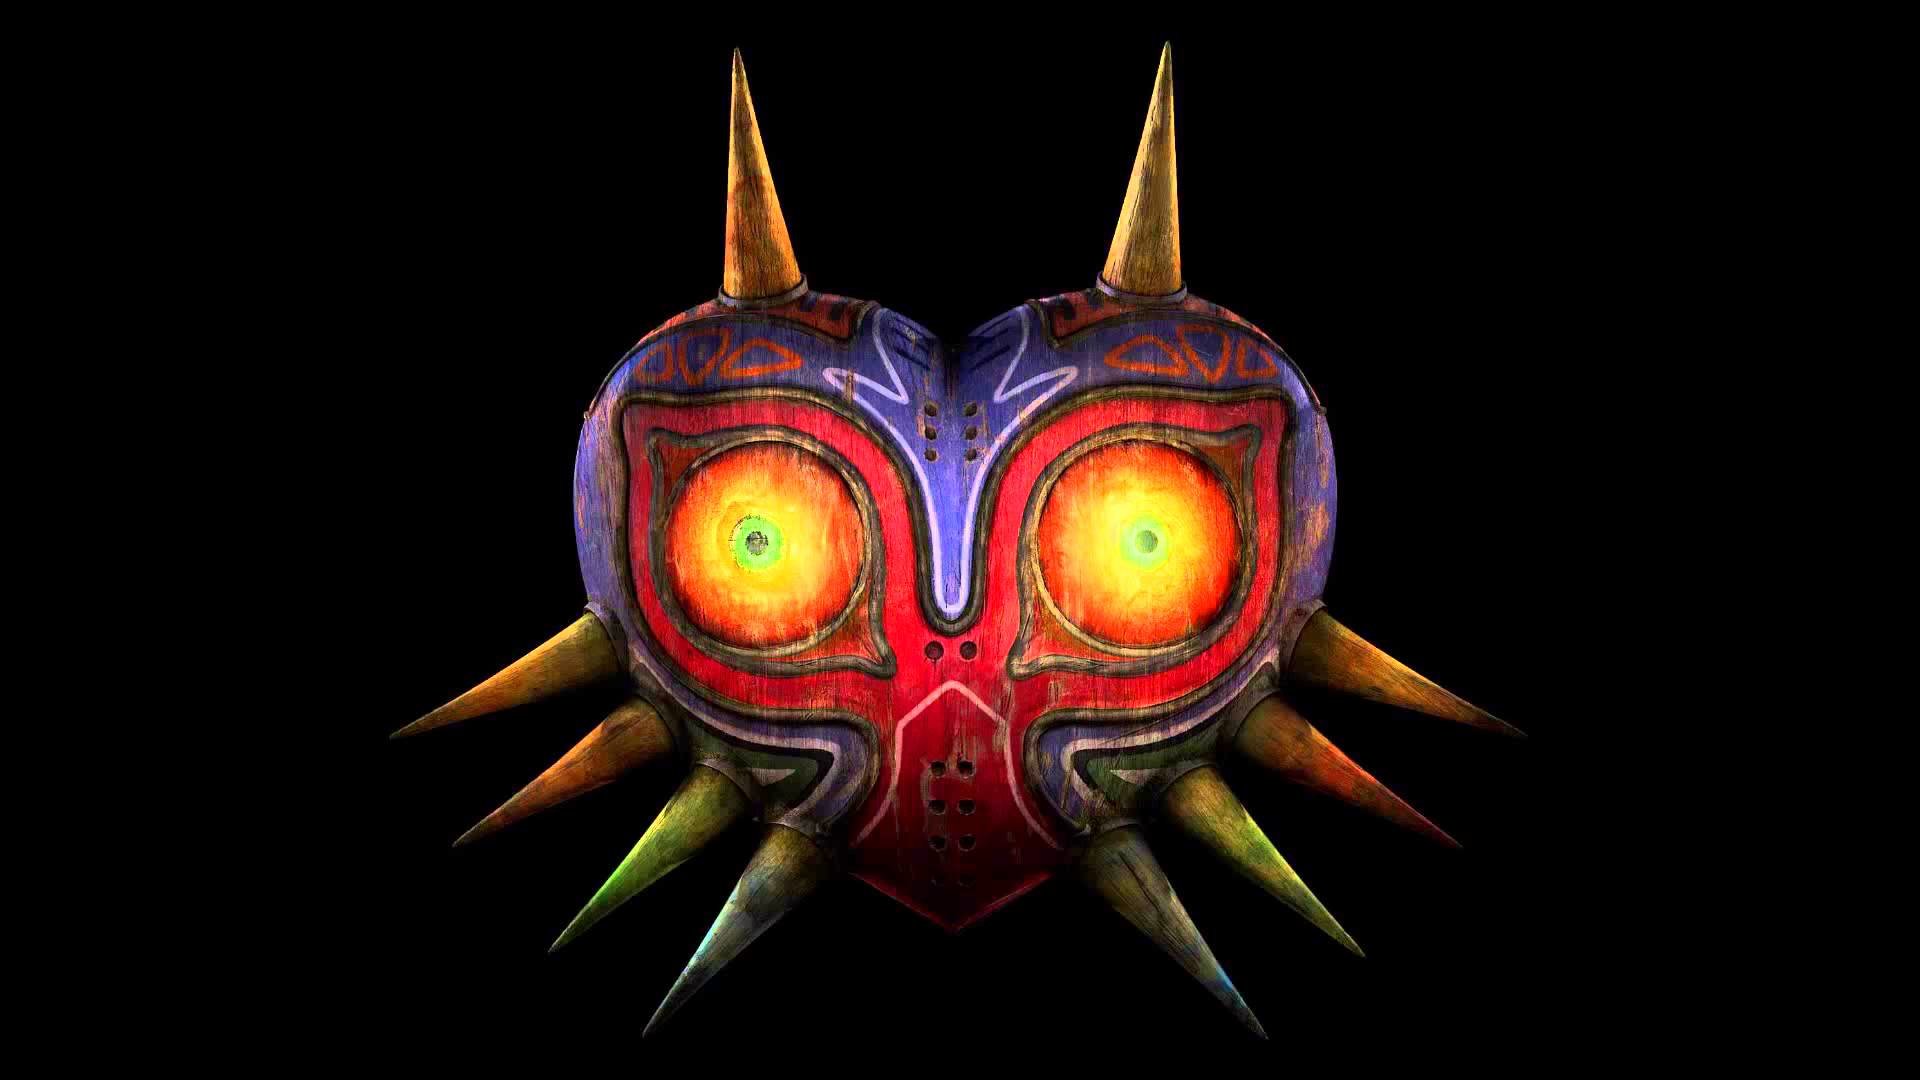 Free download The Legend Of Zelda: Majora's Mask background ID:145450 1080p for desktop